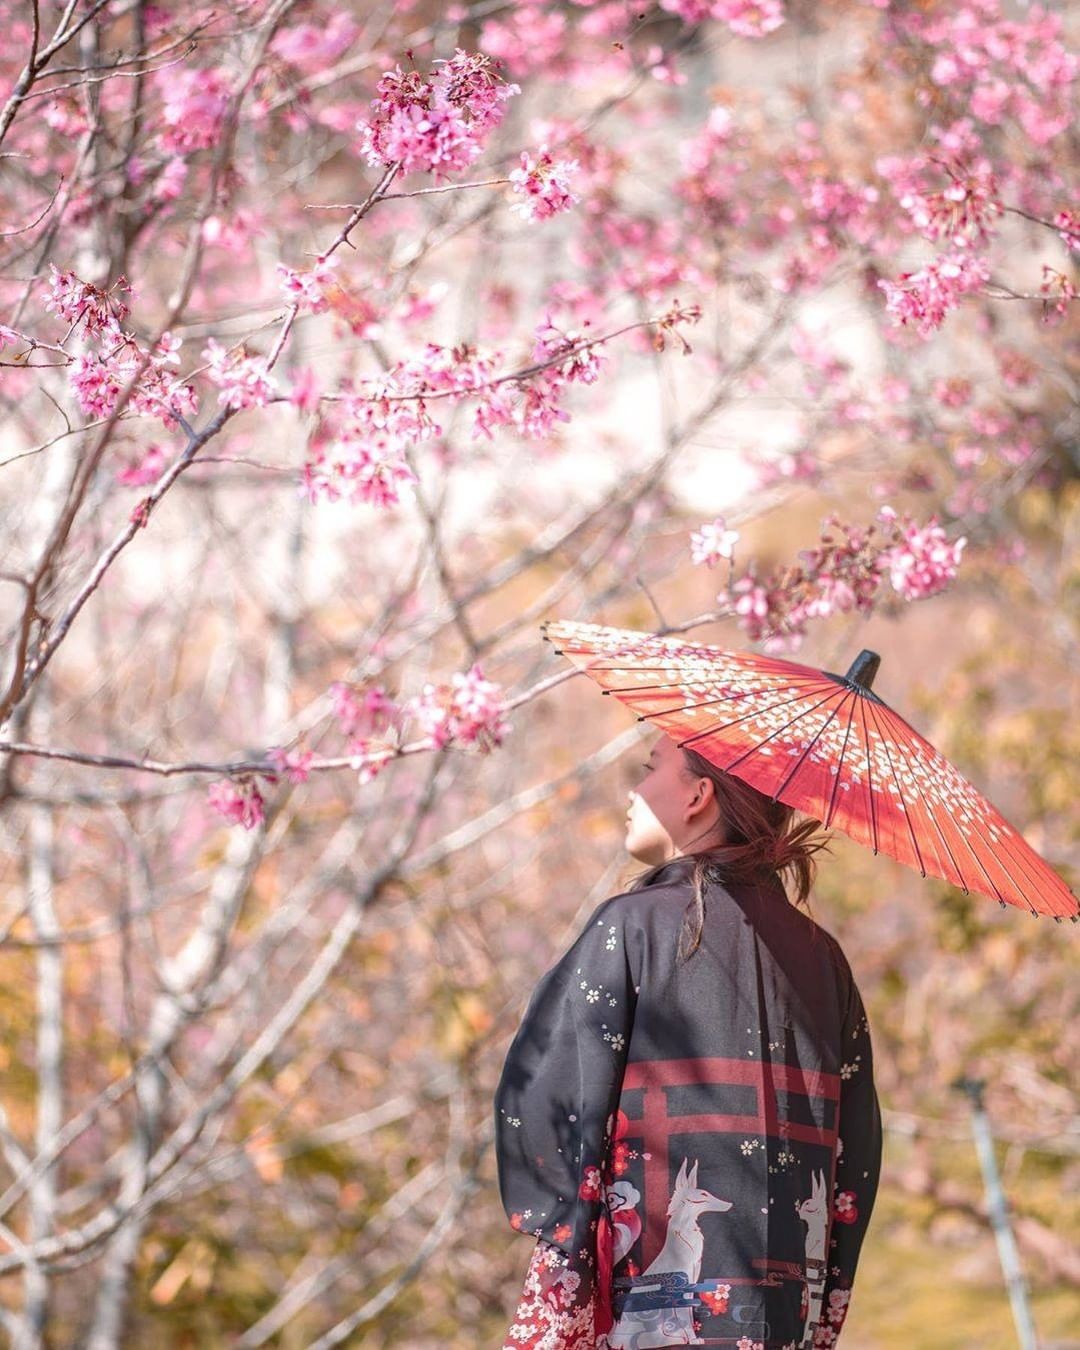 雖然櫻花祭已過但櫻花的美景永遠存我們心中❤-⠀⠀⠀⠀⠀⠀⠀⠀⠀⠀⠀感謝 @kim.12.30 分享的美照-⠀⠀⠀⠀⠀⠀⠀⠀⠀⠀⠀⠀...